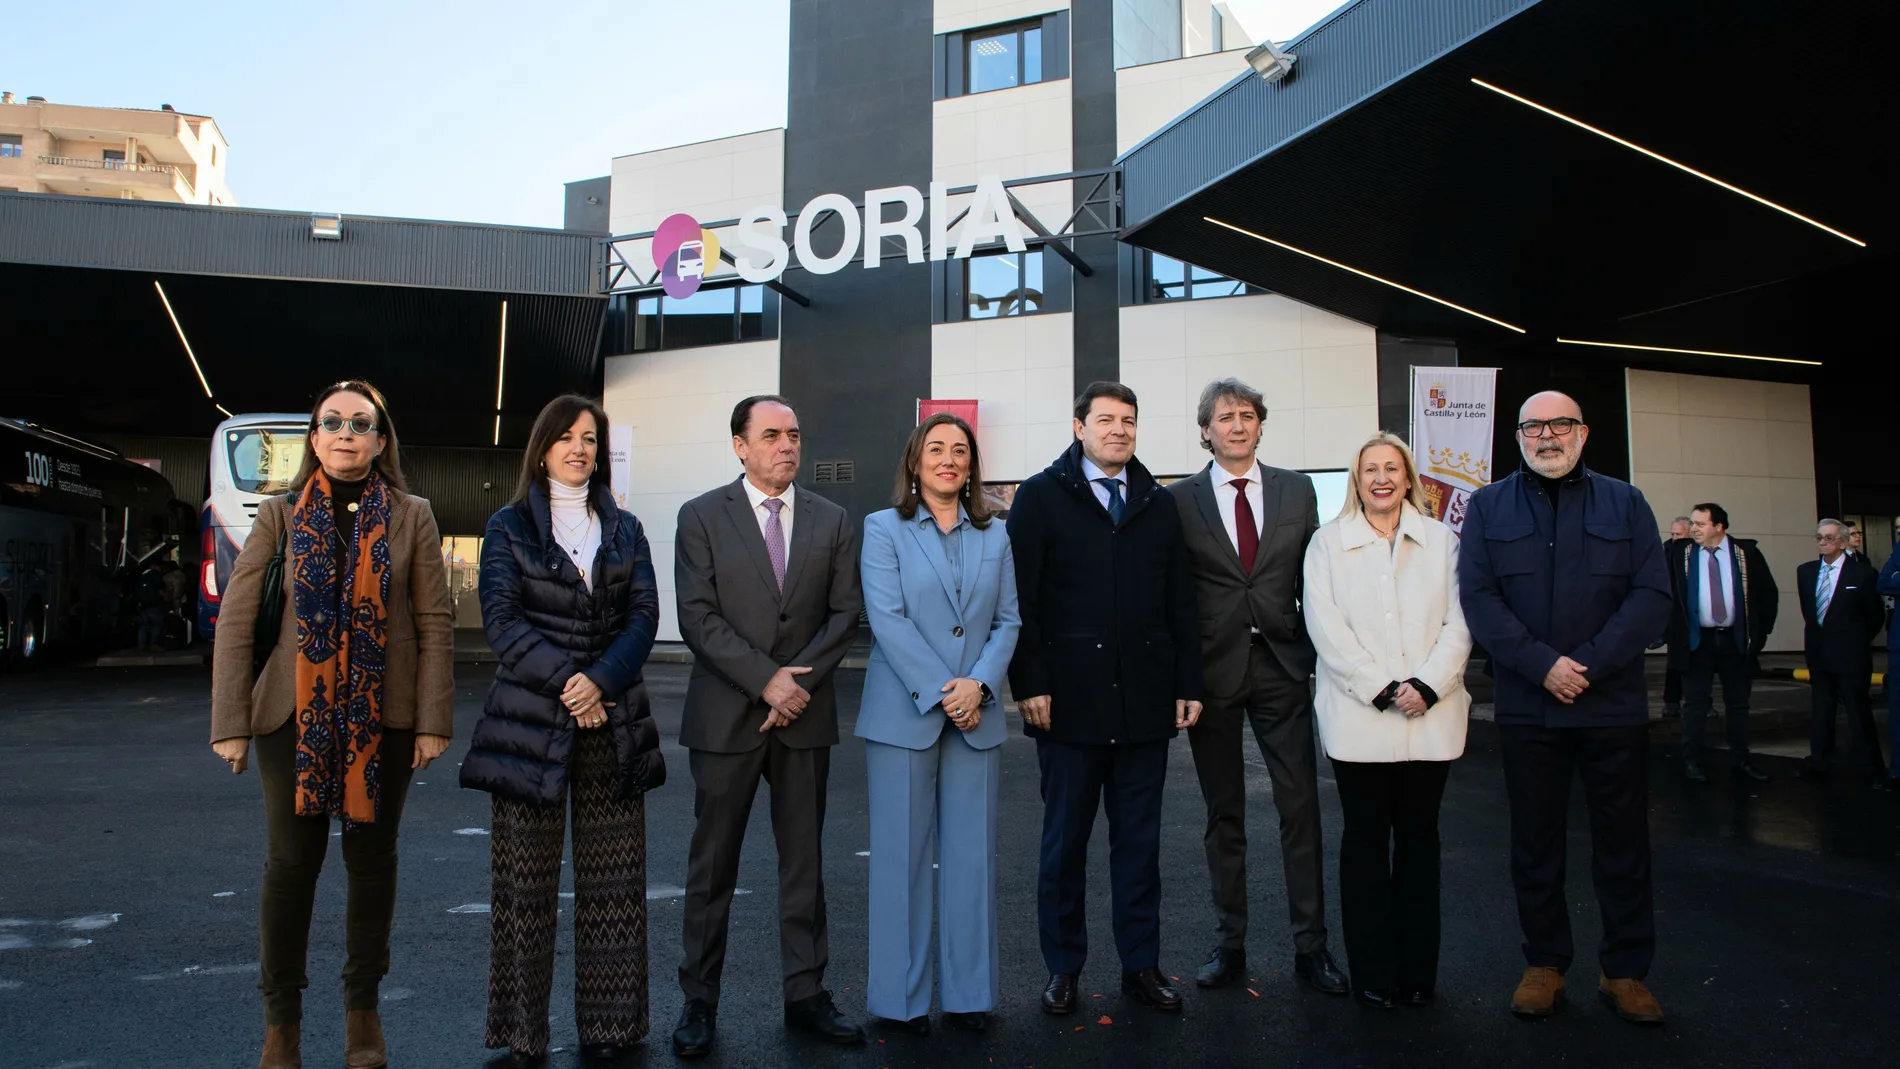 Mañueco junto a González Corrla, Carlos Martínez,,Latorre y Benito Serrano, entre otros, tras inaugurar la nueva estación de autobuses de Soria